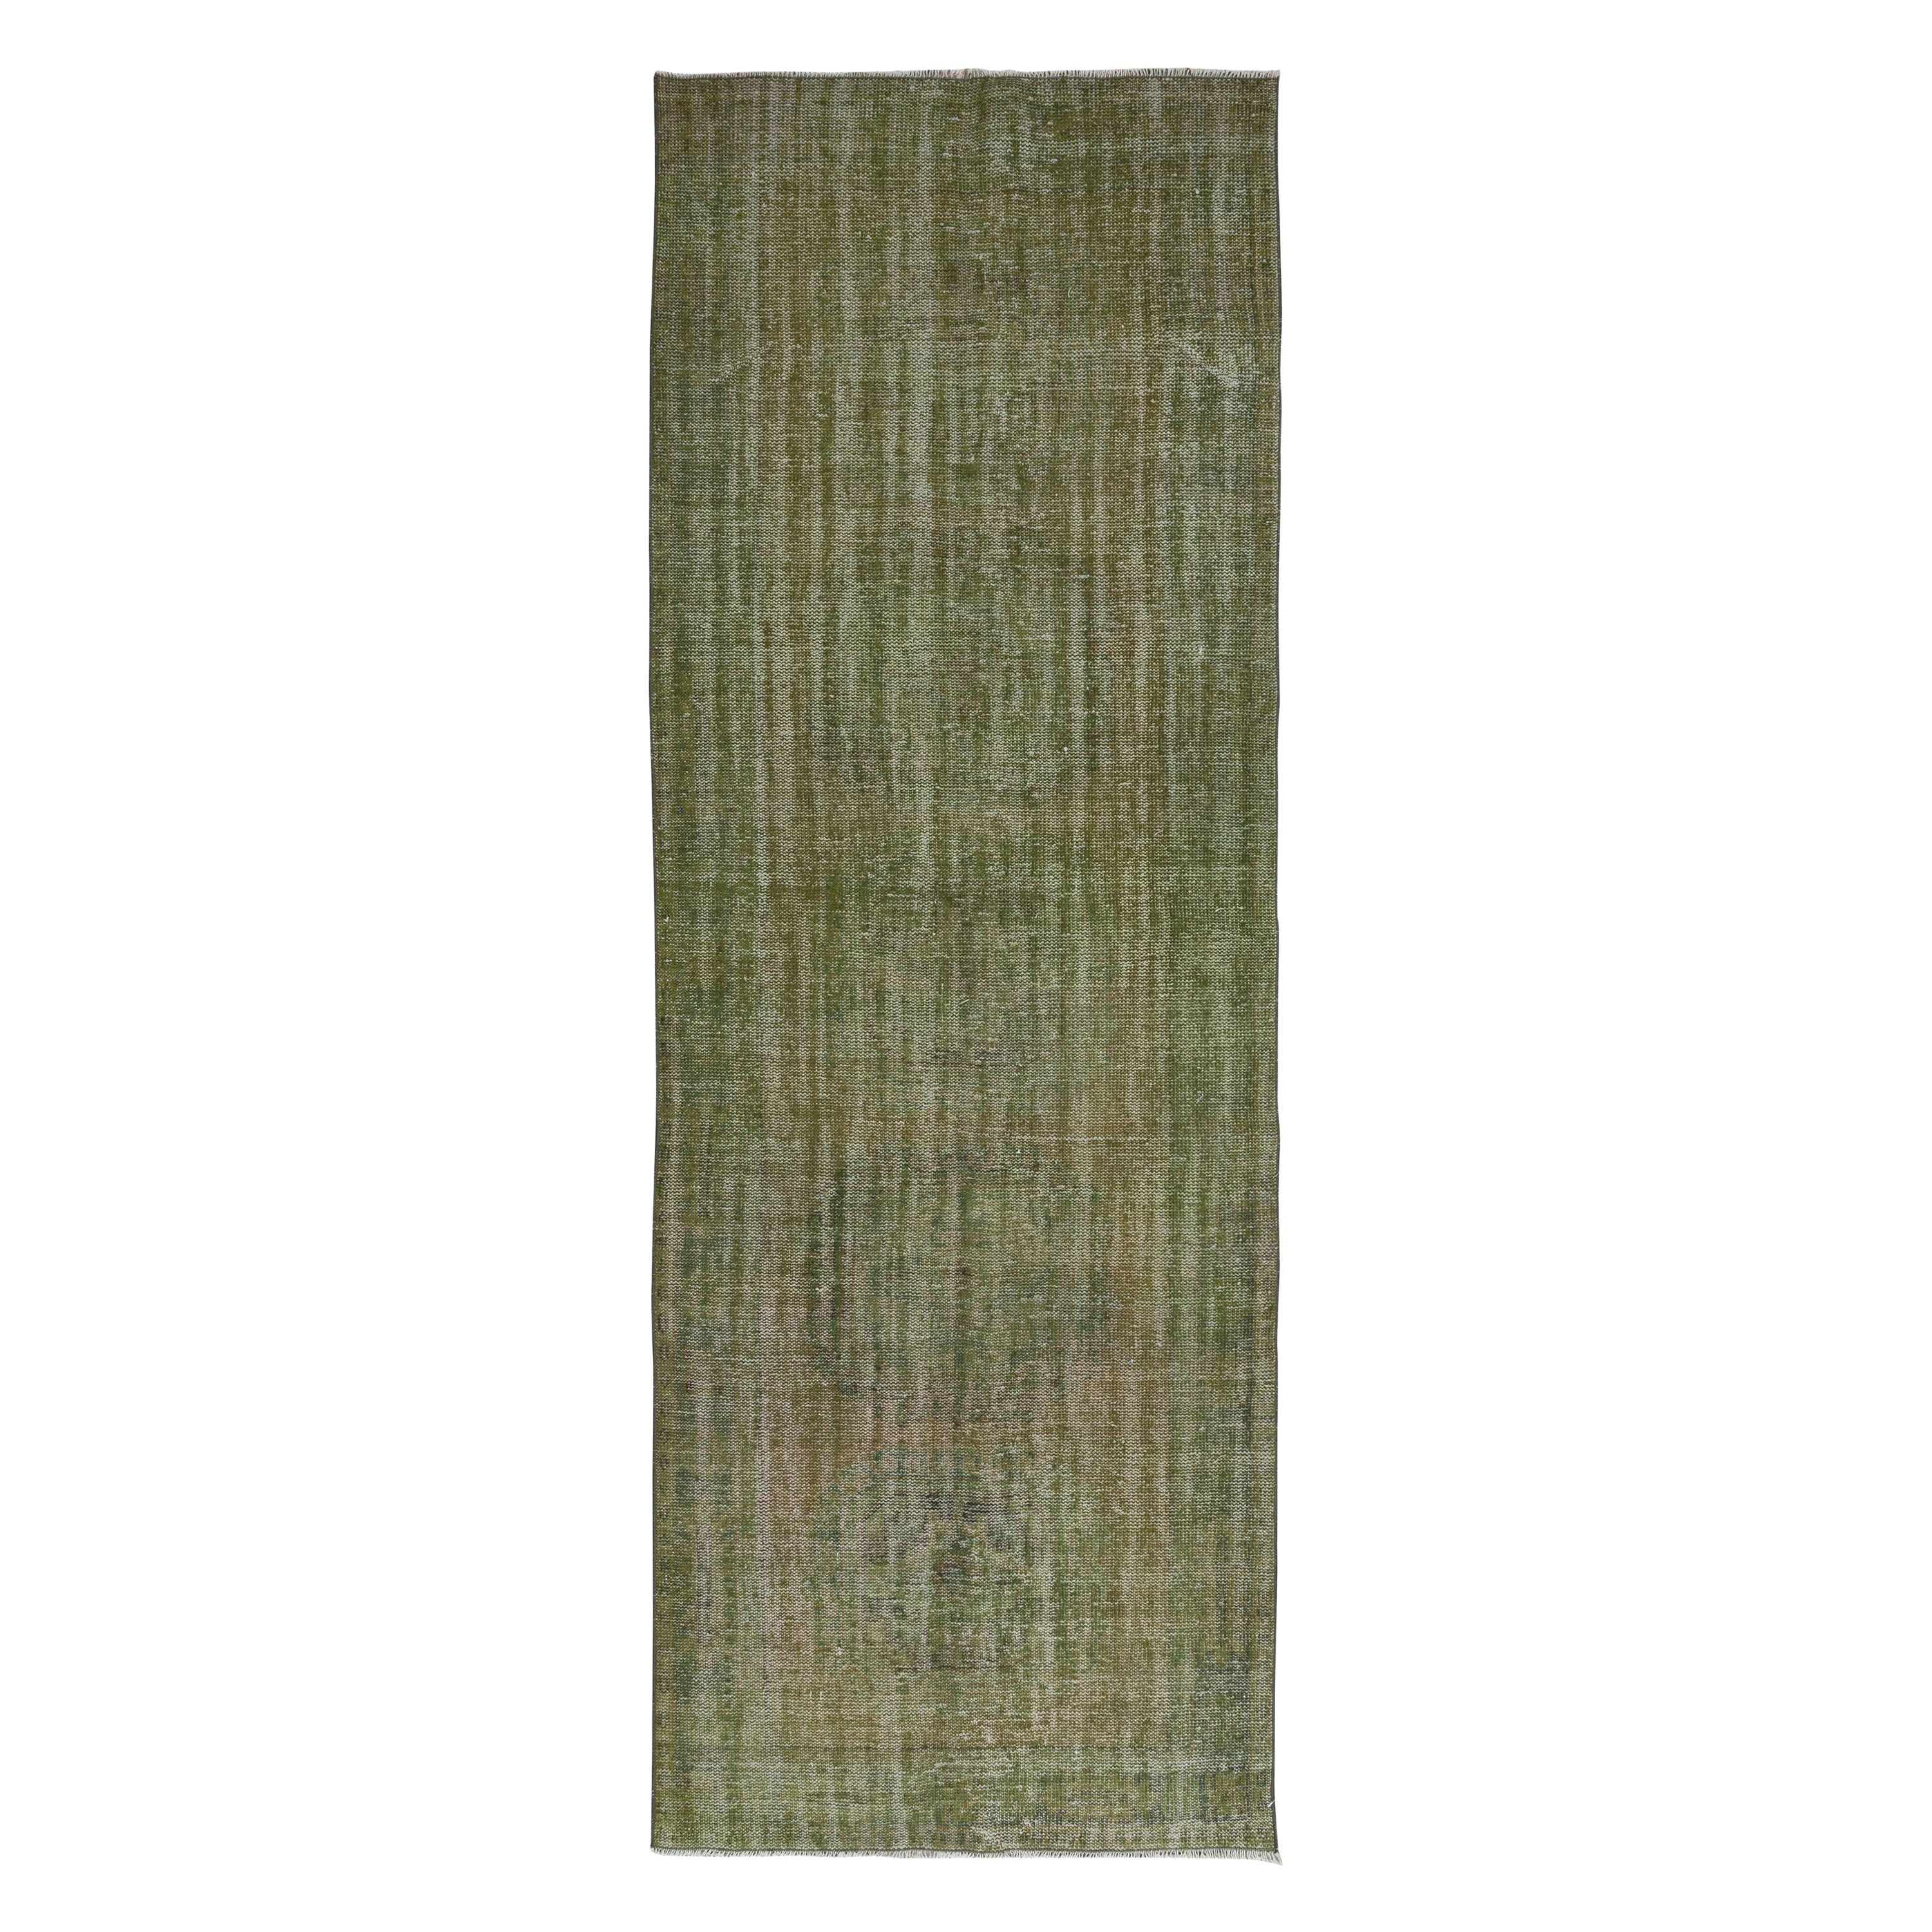 4.2x11.5 Ft Handmade Anatolian Runner Rug in Moss Green, Modern Corridor Carpet For Sale